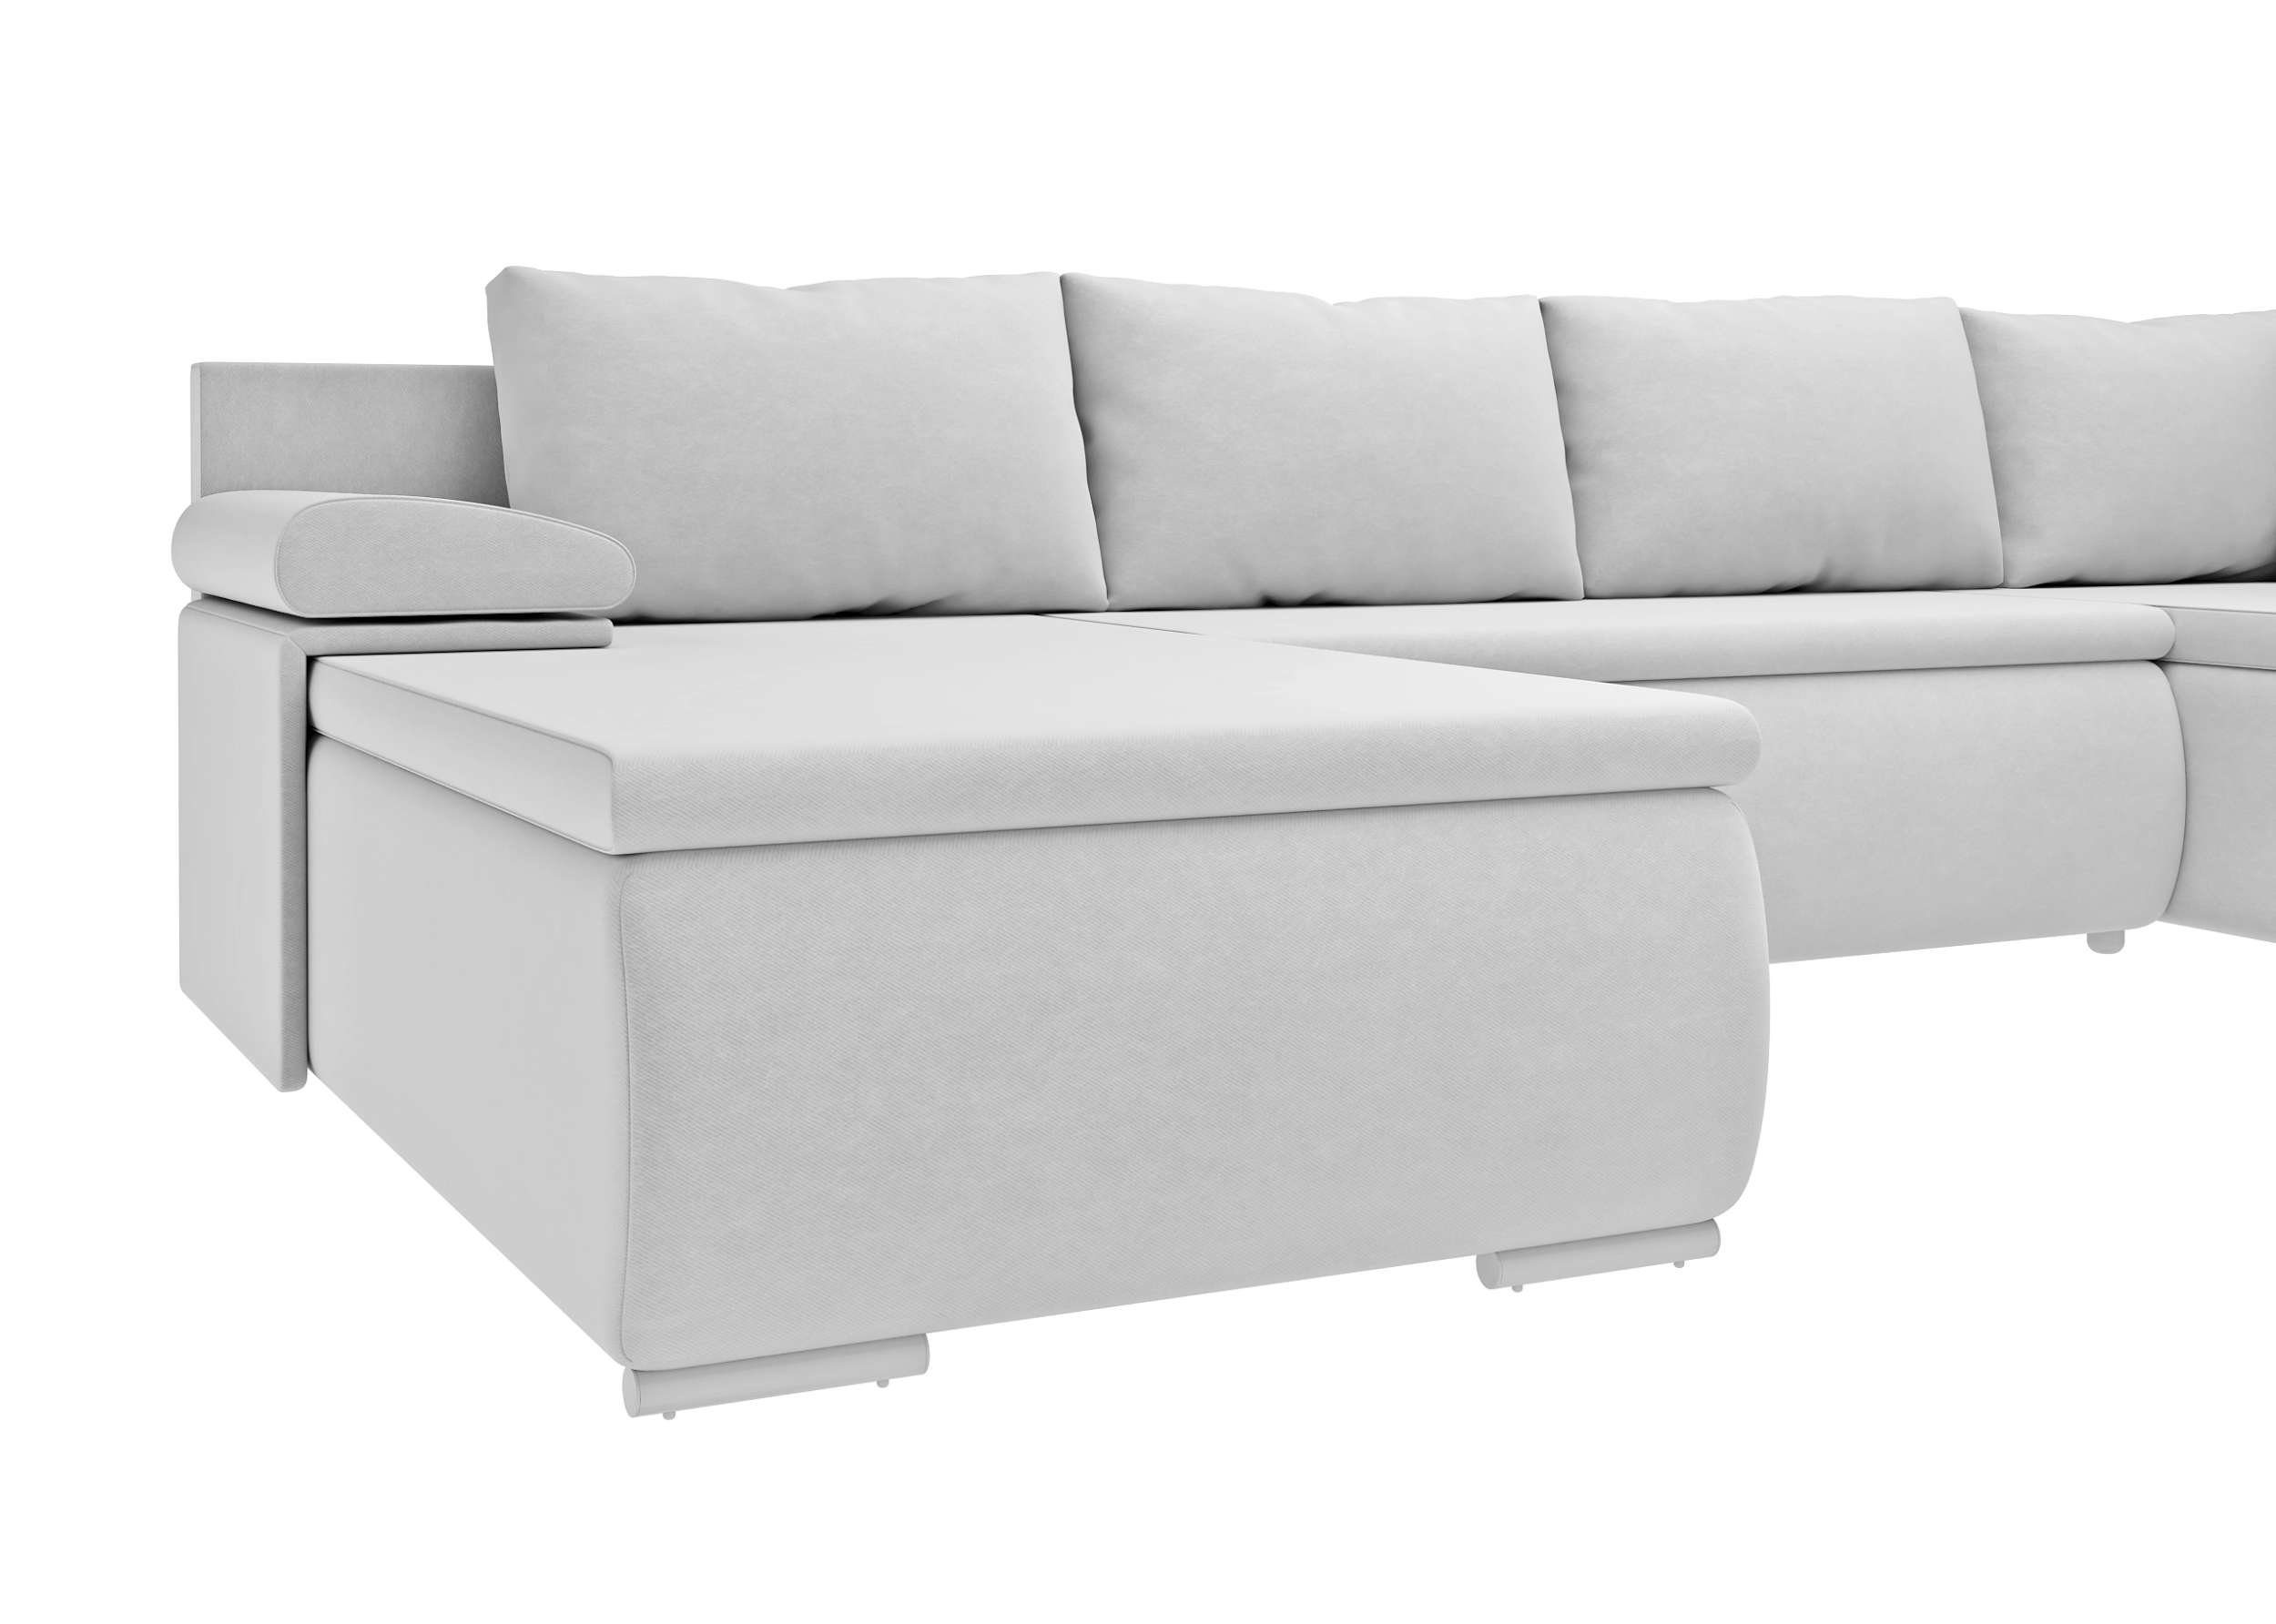 Wellenfederung Nessi, Bettfunktion Design, mit und im links Sofa, Raum Modern mane rechts Wohnlandschaft Bettkasten, oder frei mit U-Form, bestellbar, stellbar, Stylefy